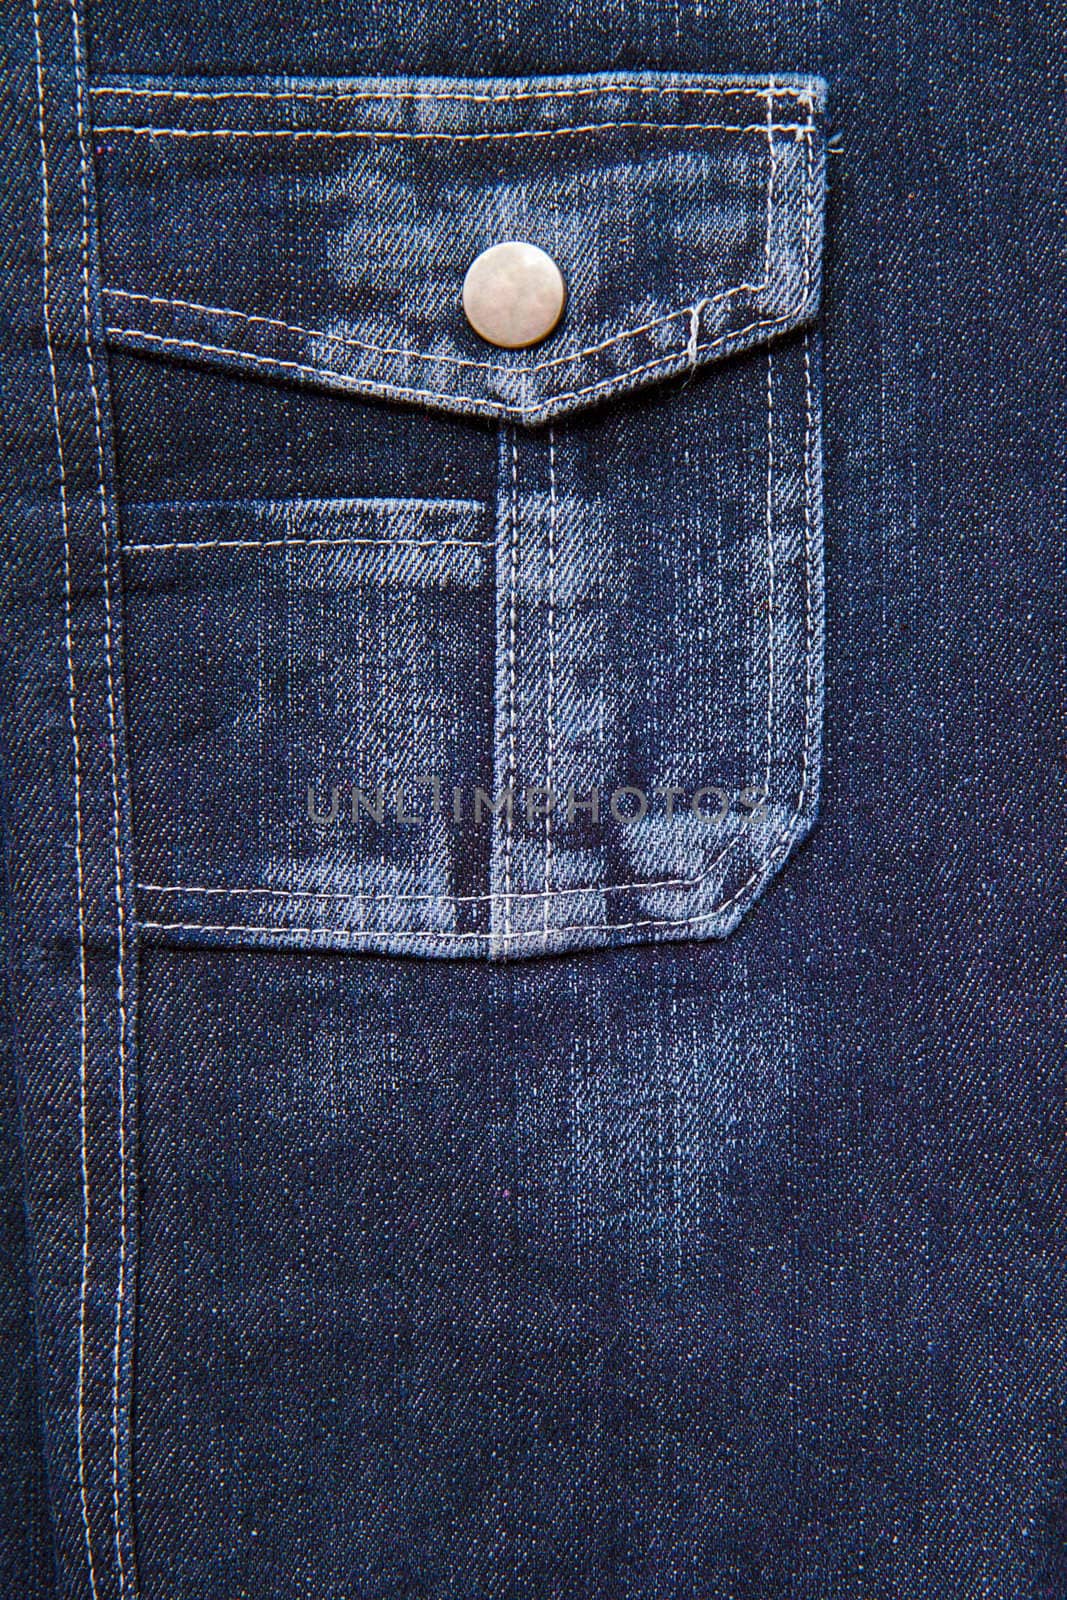 jeans pocket by pzRomashka